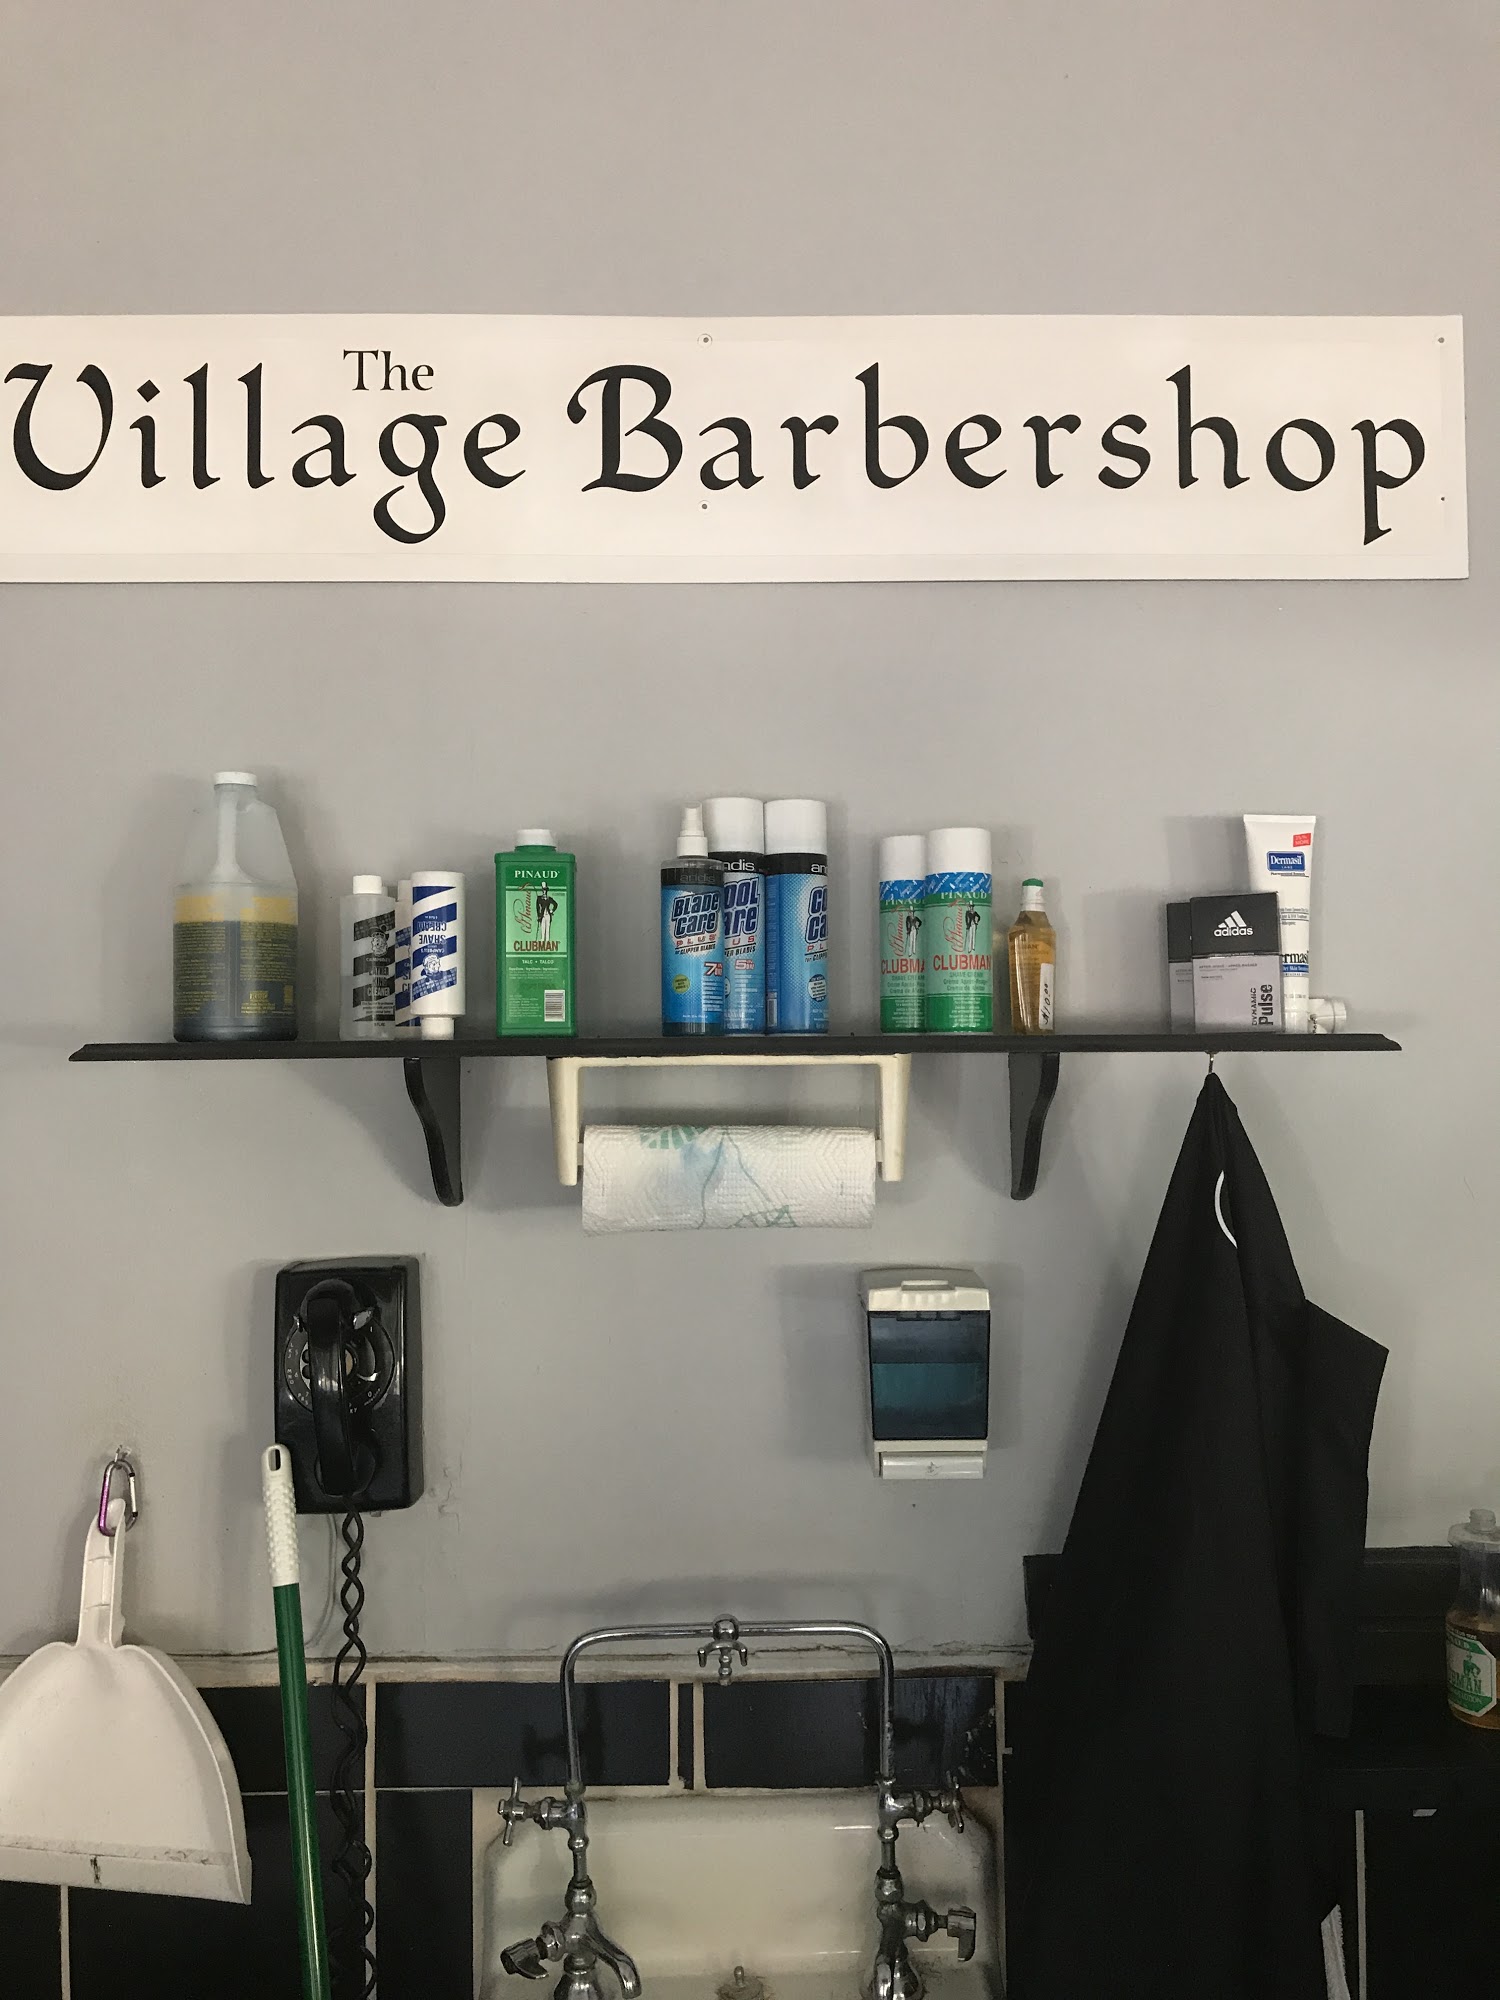 The Village Barber Shop